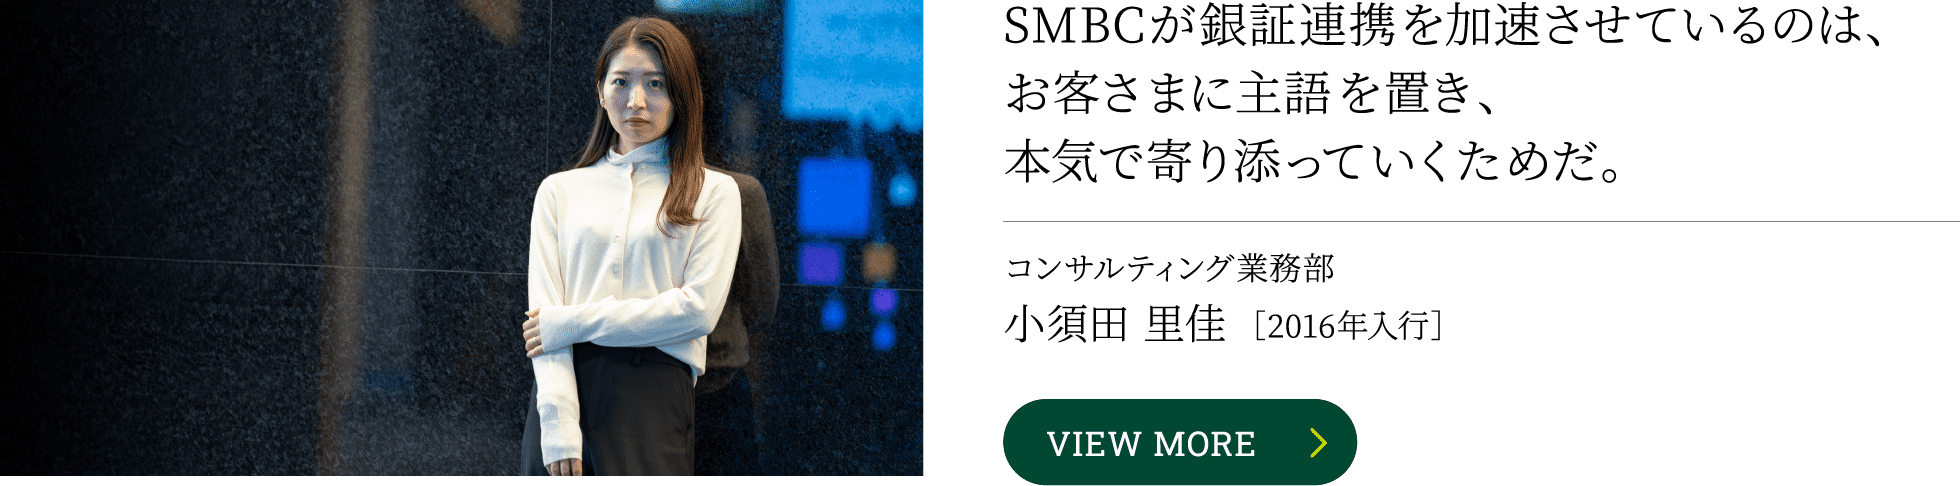 SMBCが銀証連携を加速させているのは、お客さまに主語を置き、本気で寄り添っていくためだ。コンサルティング業務部小須田 里佳［2016年入行］